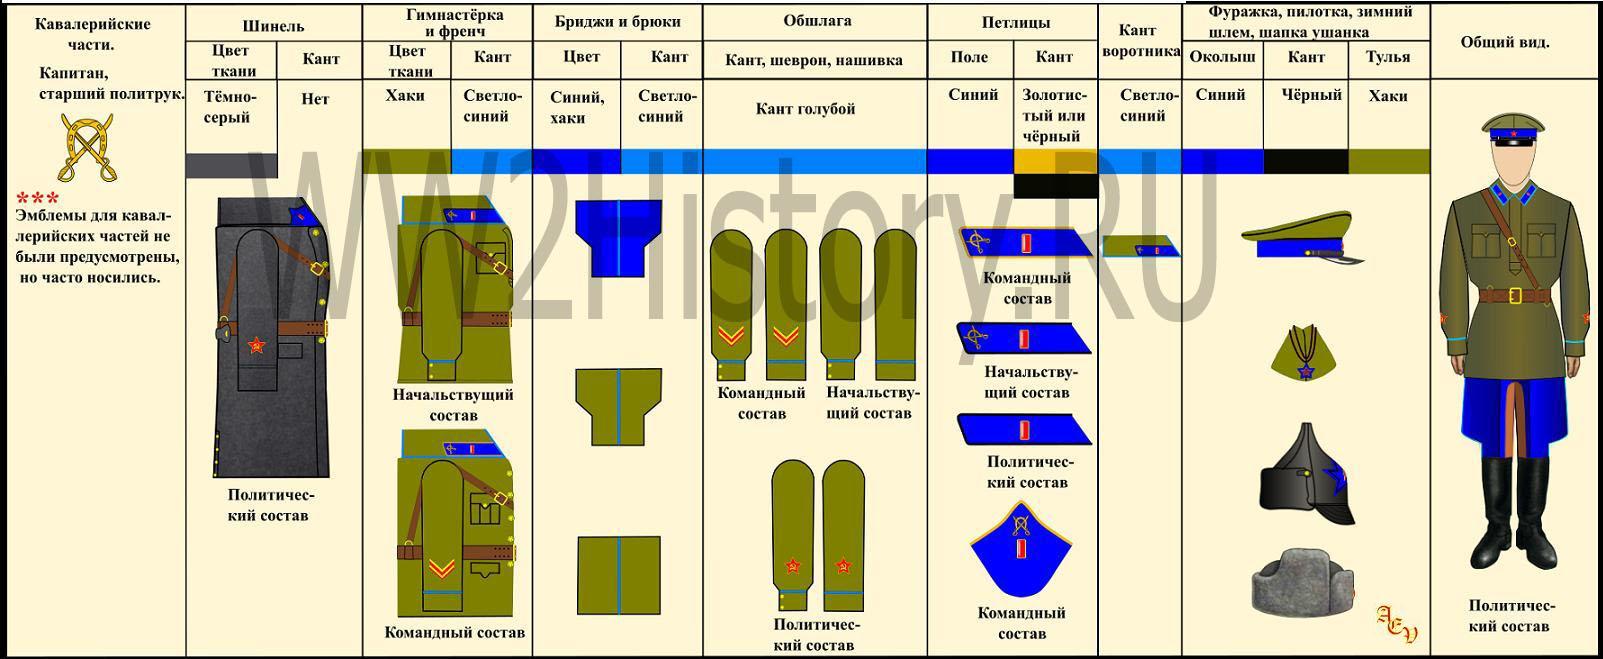 Таблица формы одежды командного, начальствующего и политического состава РККА на 22.6.1941 года Aafd2395